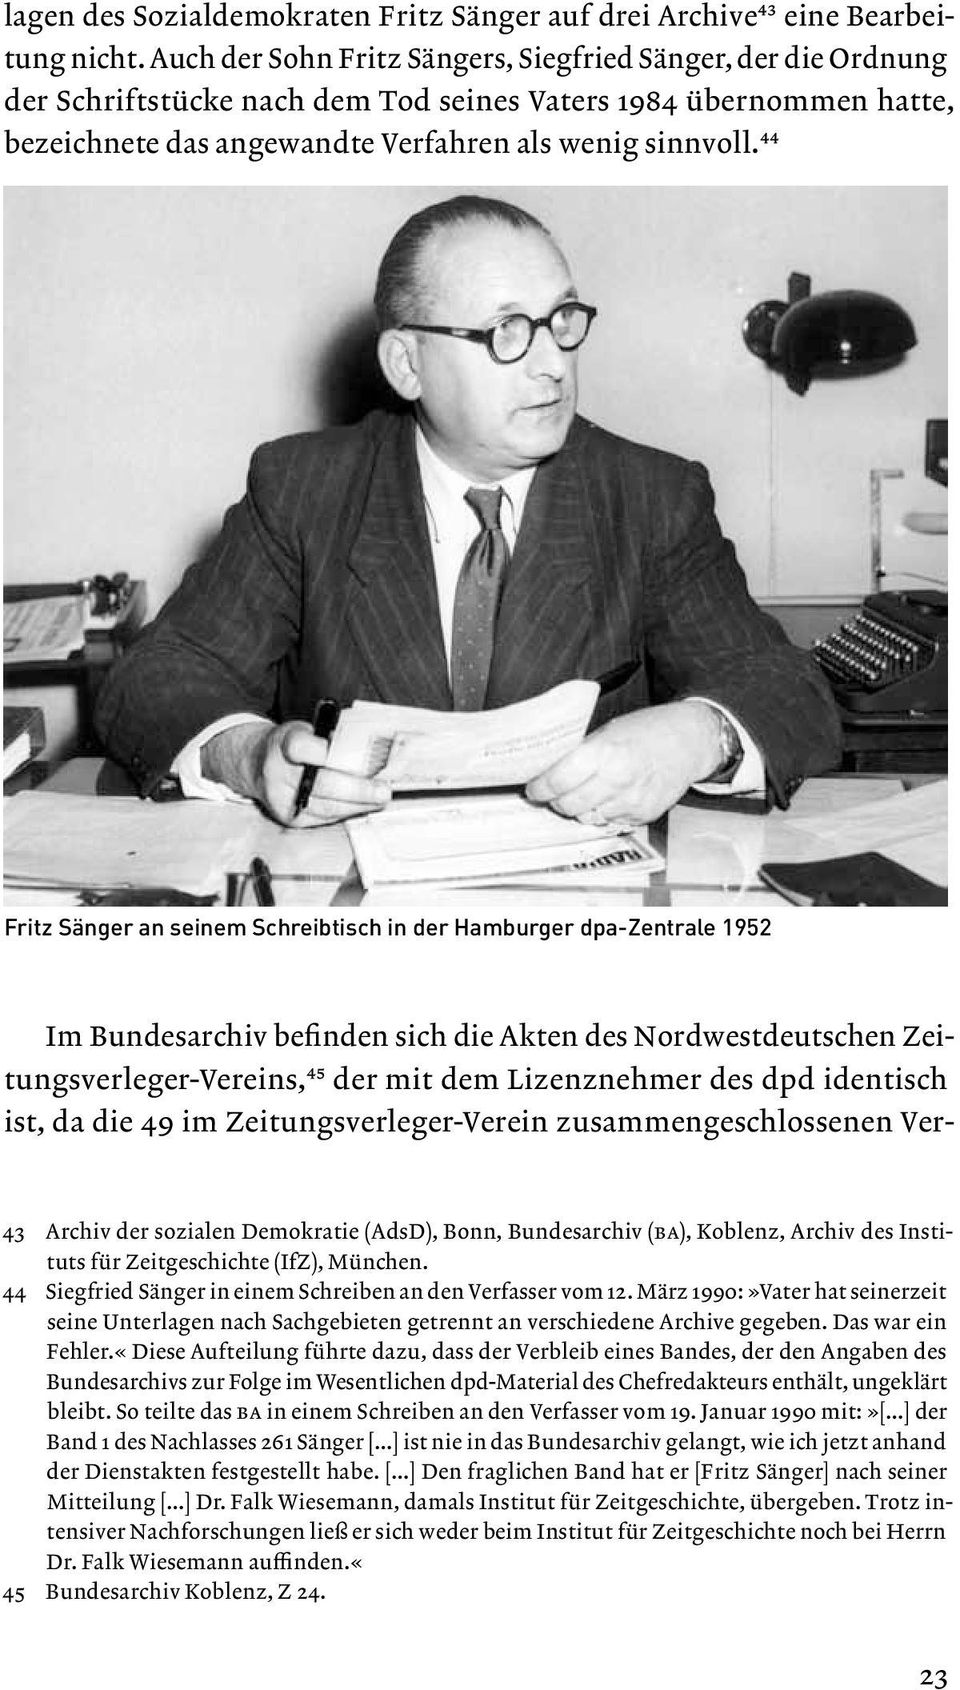 44 Fritz Sänger an seinem Schreibtisch in der Hamburger dpa-zentrale 1952 Im Bundesarchiv befinden sich die Akten des Nordwestdeutschen Zeitungsverleger-Vereins,45 der mit dem Lizenznehmer des dpd